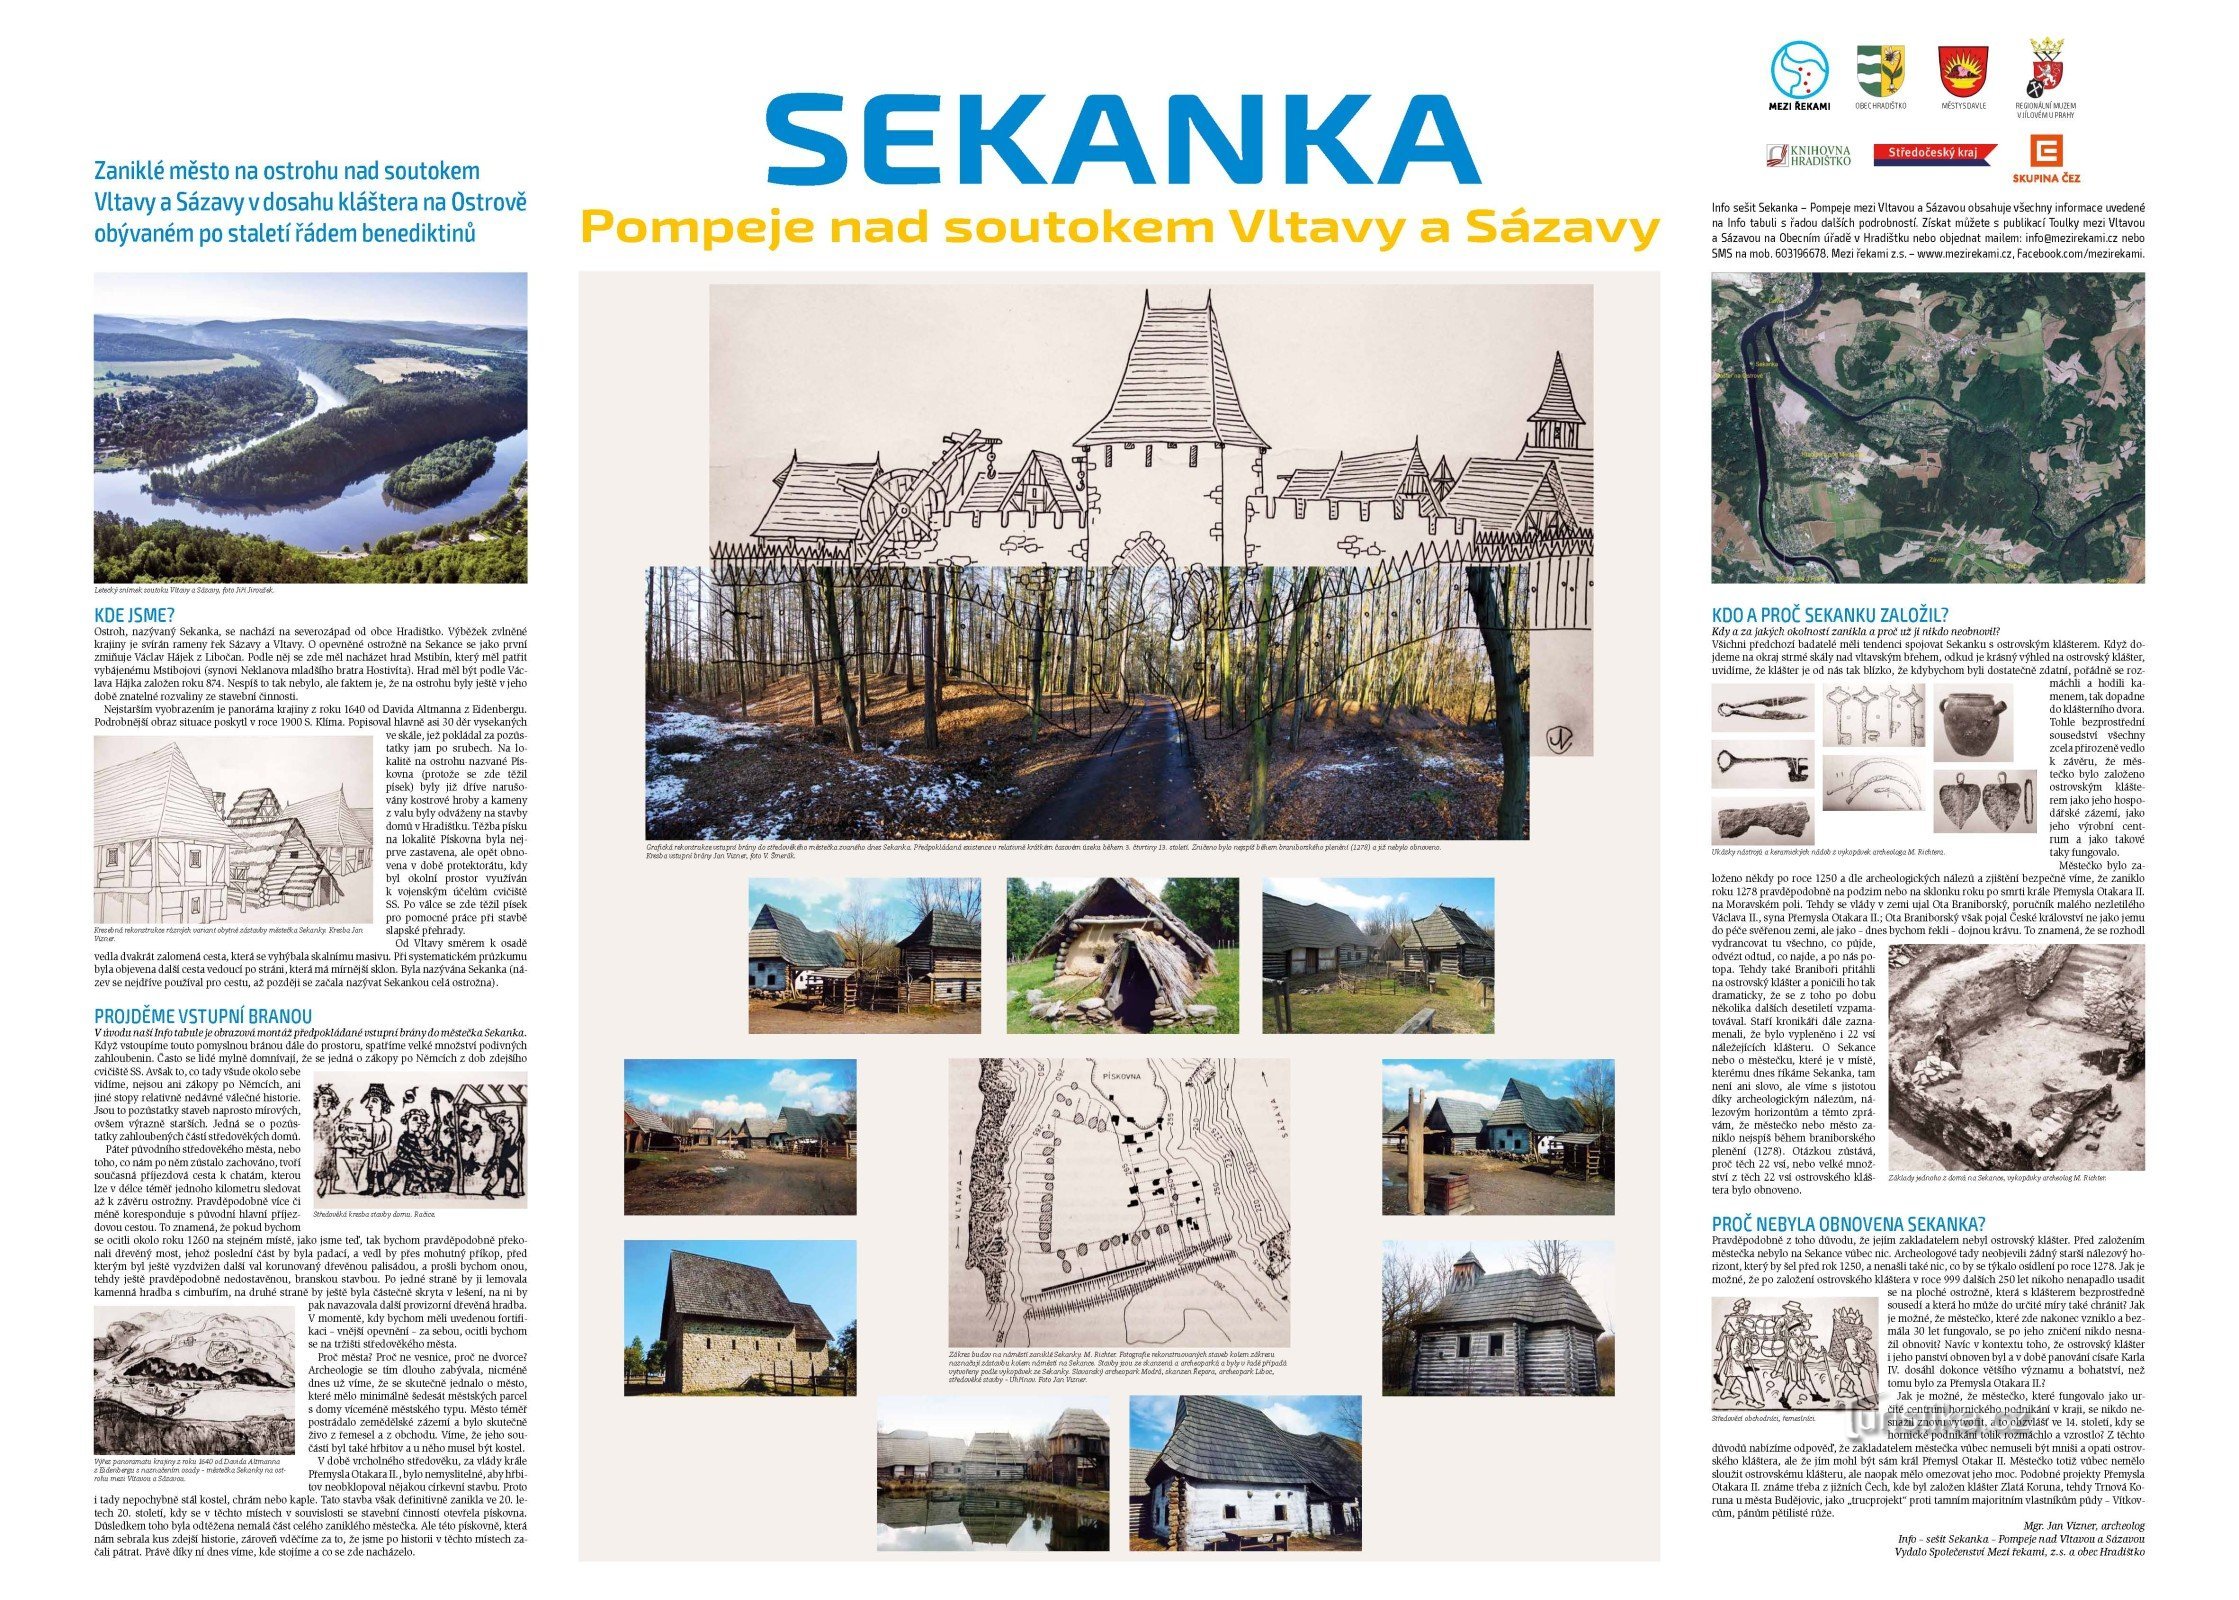 Bảng thông tin với lịch sử của Sekanka